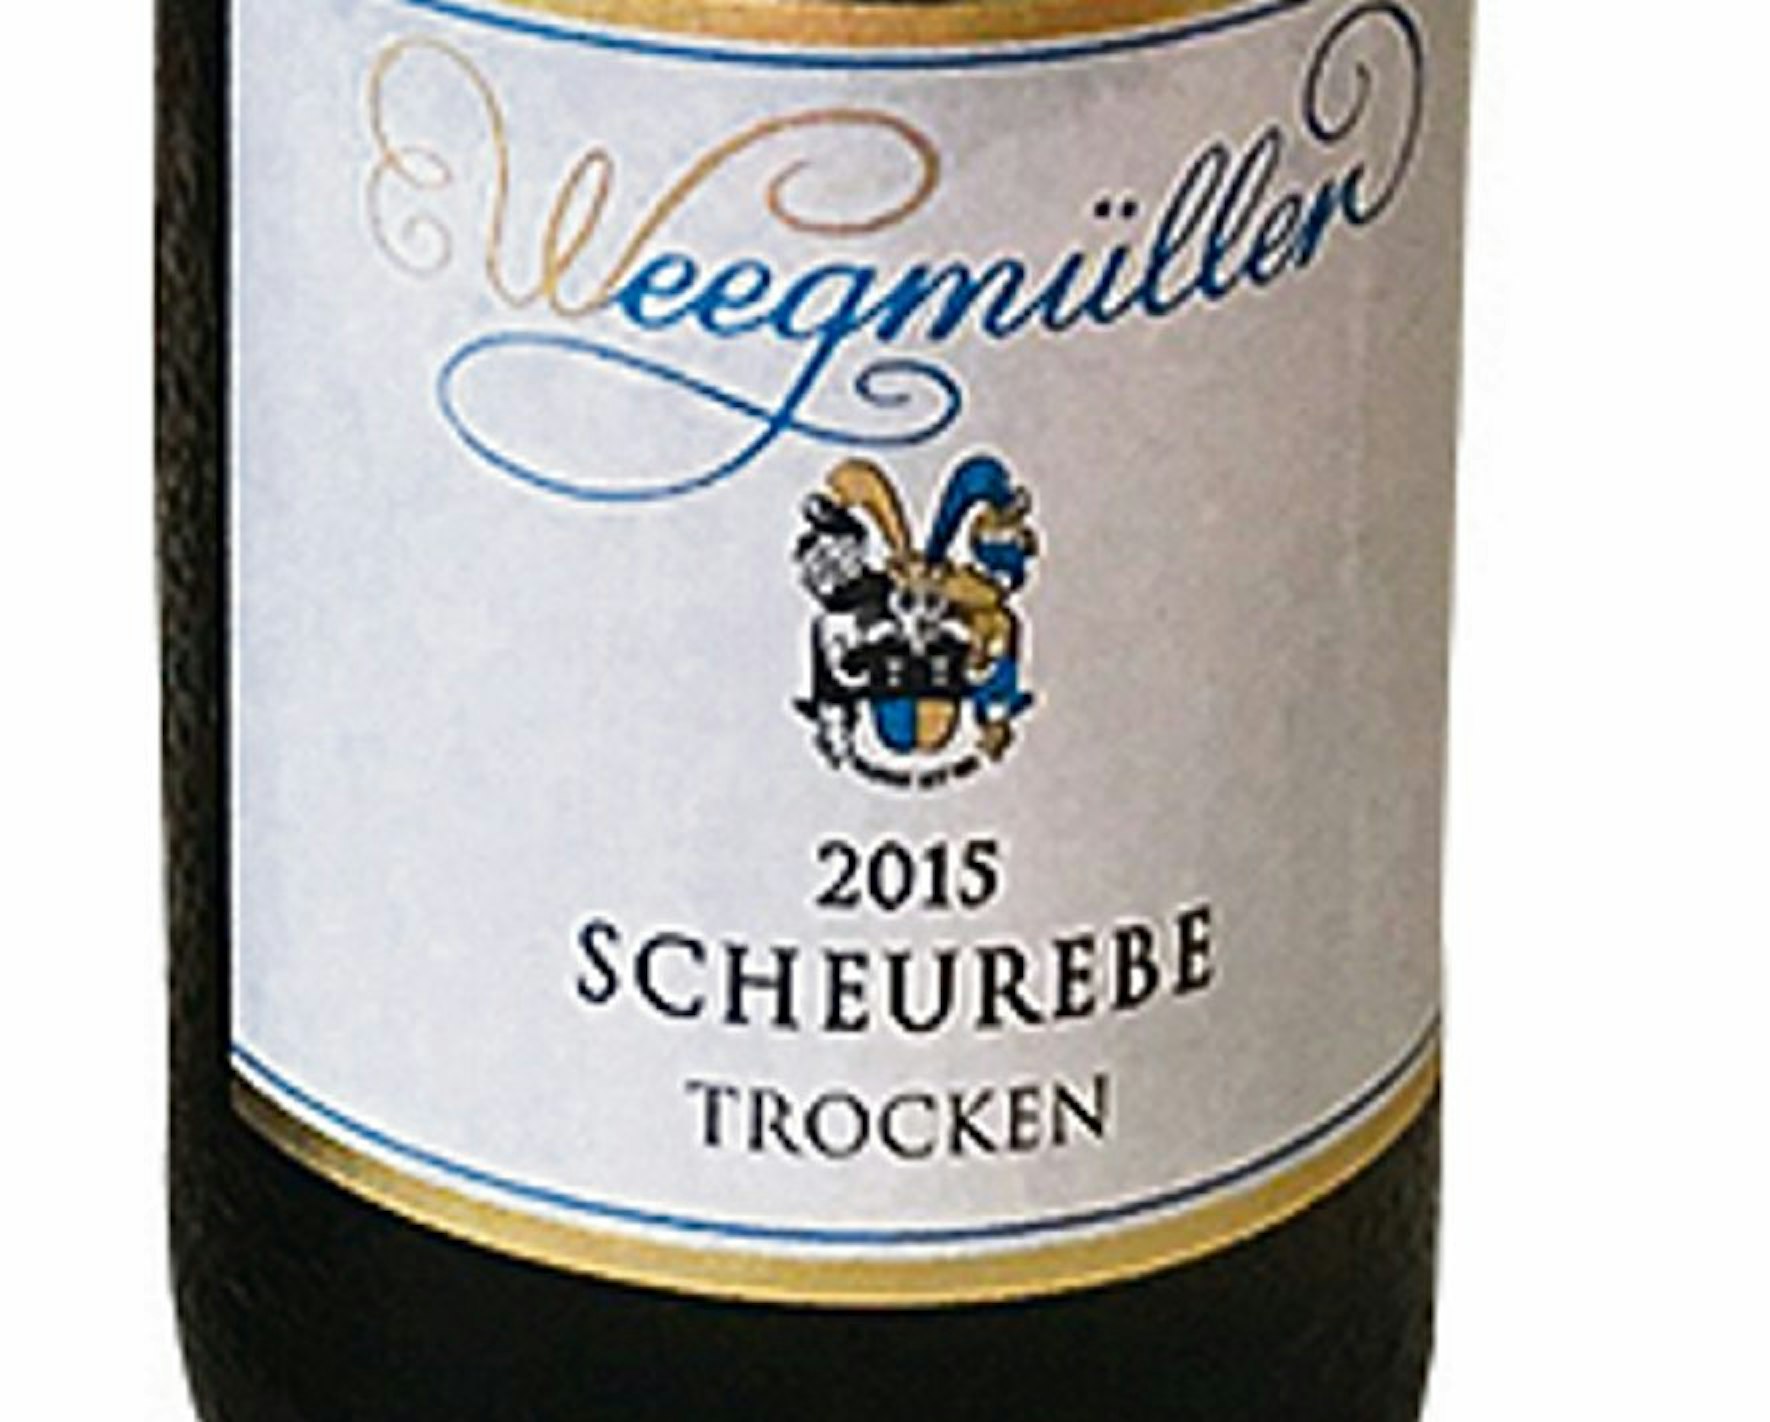 Wein Weegemüller